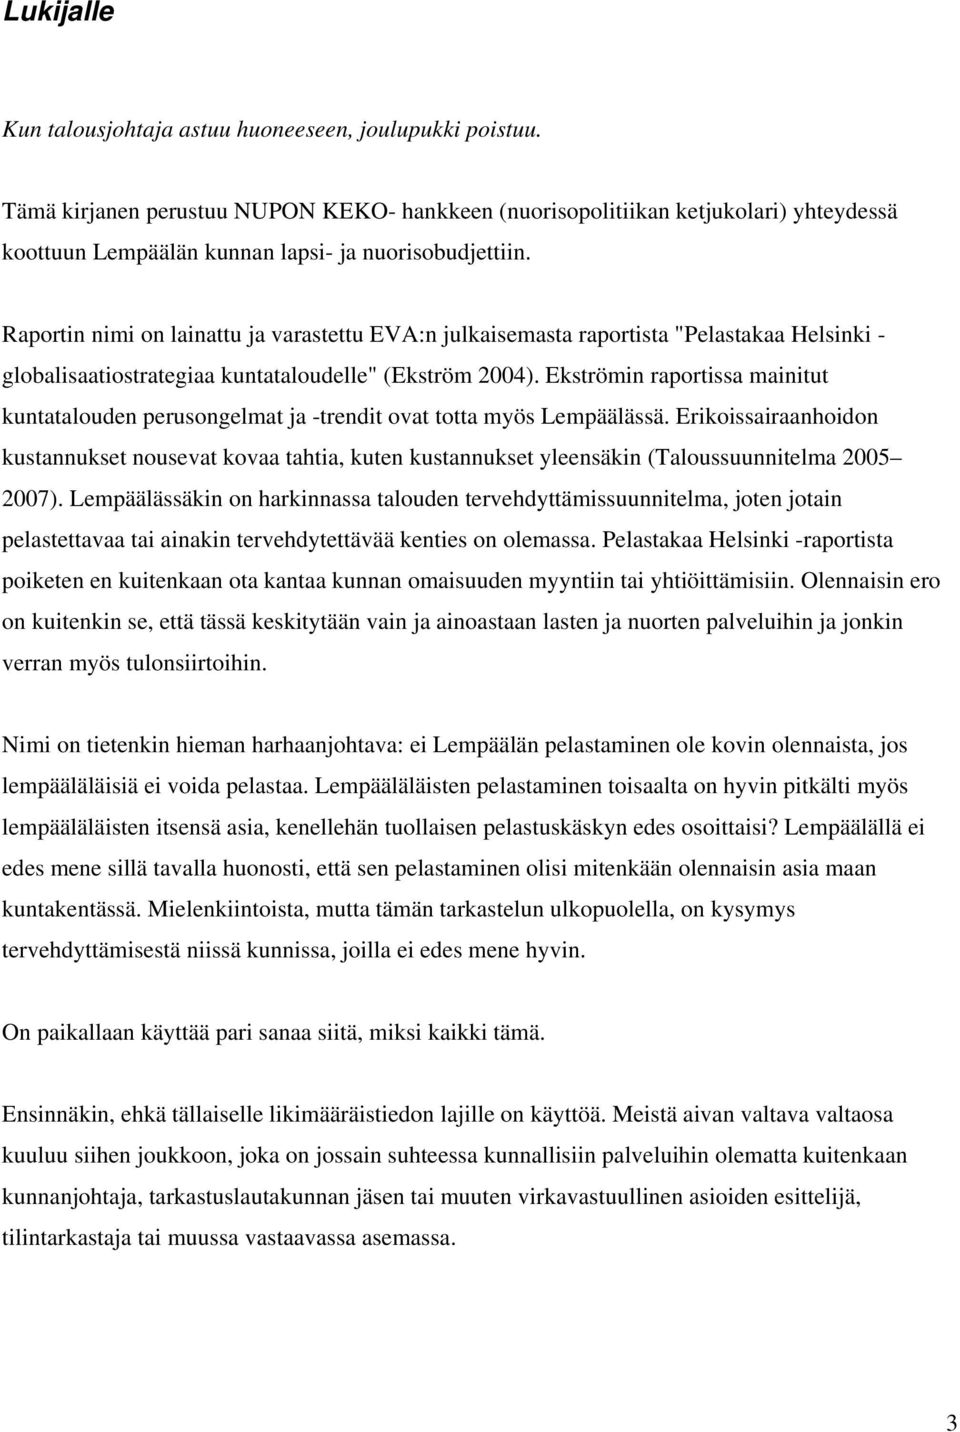 Raportin nimi on lainattu ja varastettu EVA:n julkaisemasta raportista "Pelastakaa Helsinki - globalisaatiostrategiaa kuntataloudelle" (Ekström 2004).